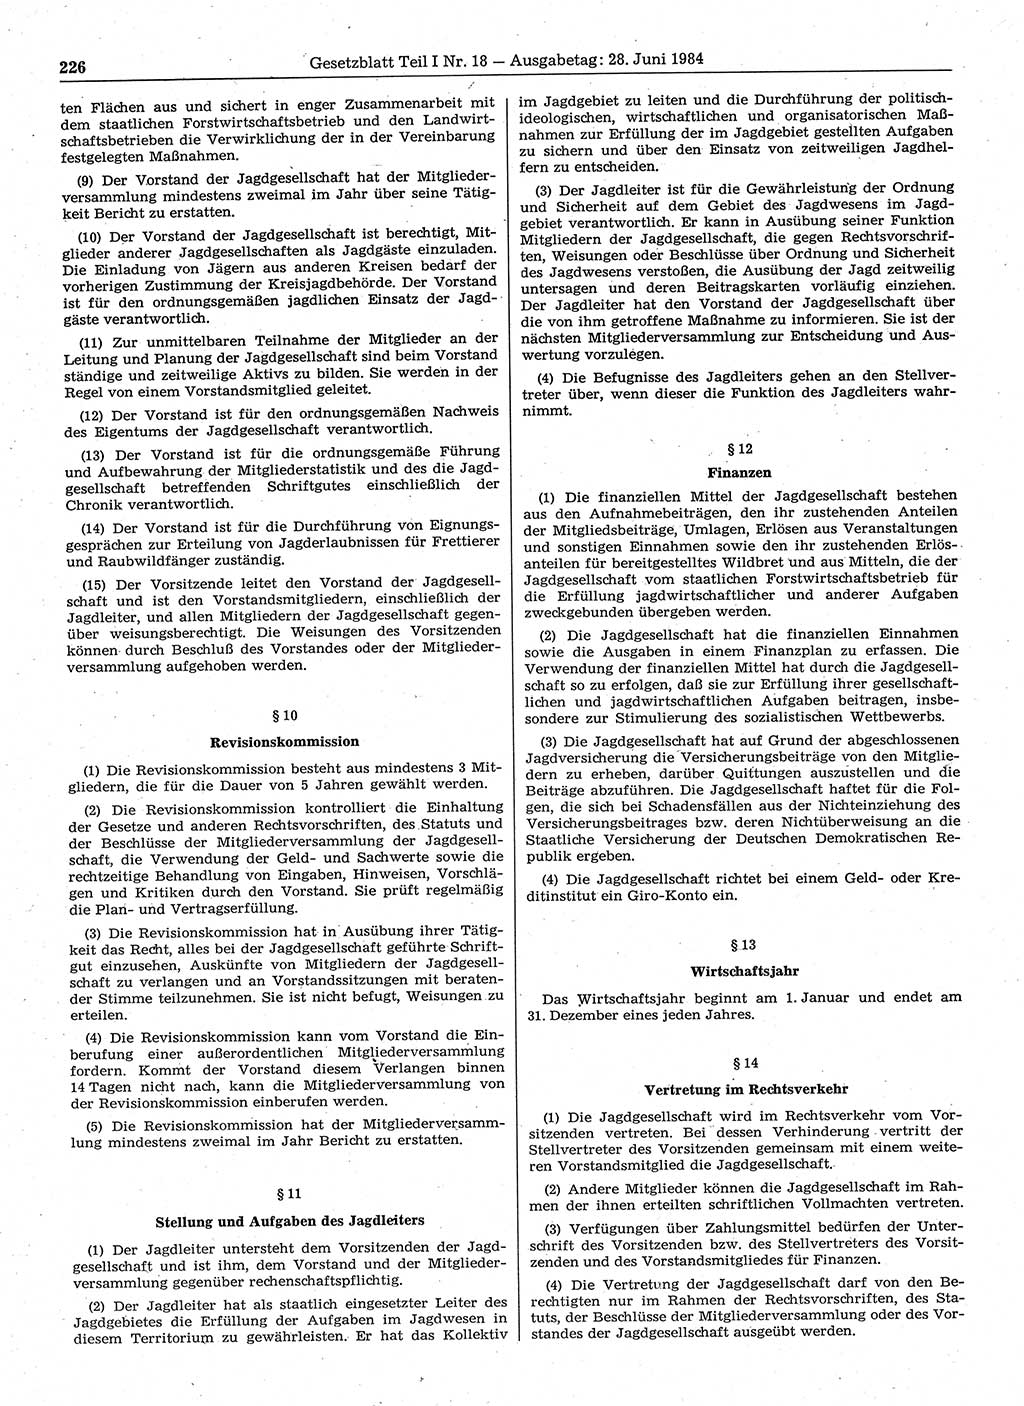 Gesetzblatt (GBl.) der Deutschen Demokratischen Republik (DDR) Teil Ⅰ 1984, Seite 226 (GBl. DDR Ⅰ 1984, S. 226)